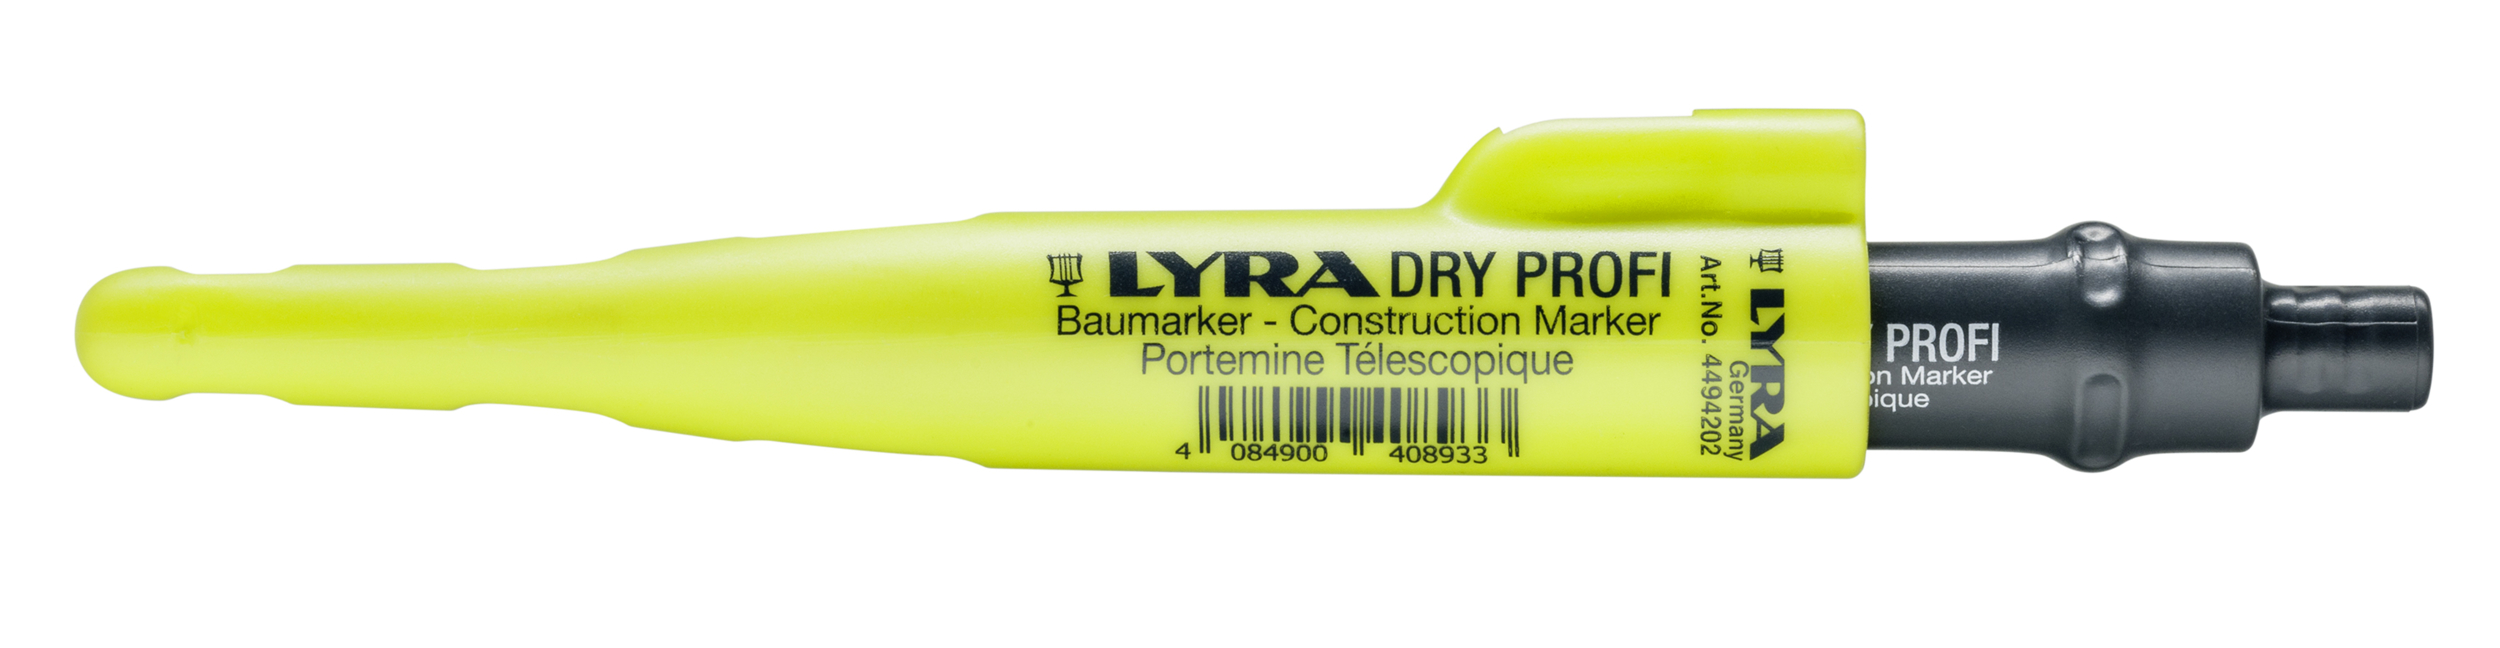 Crayon de chantier DRY - Pica - 3030